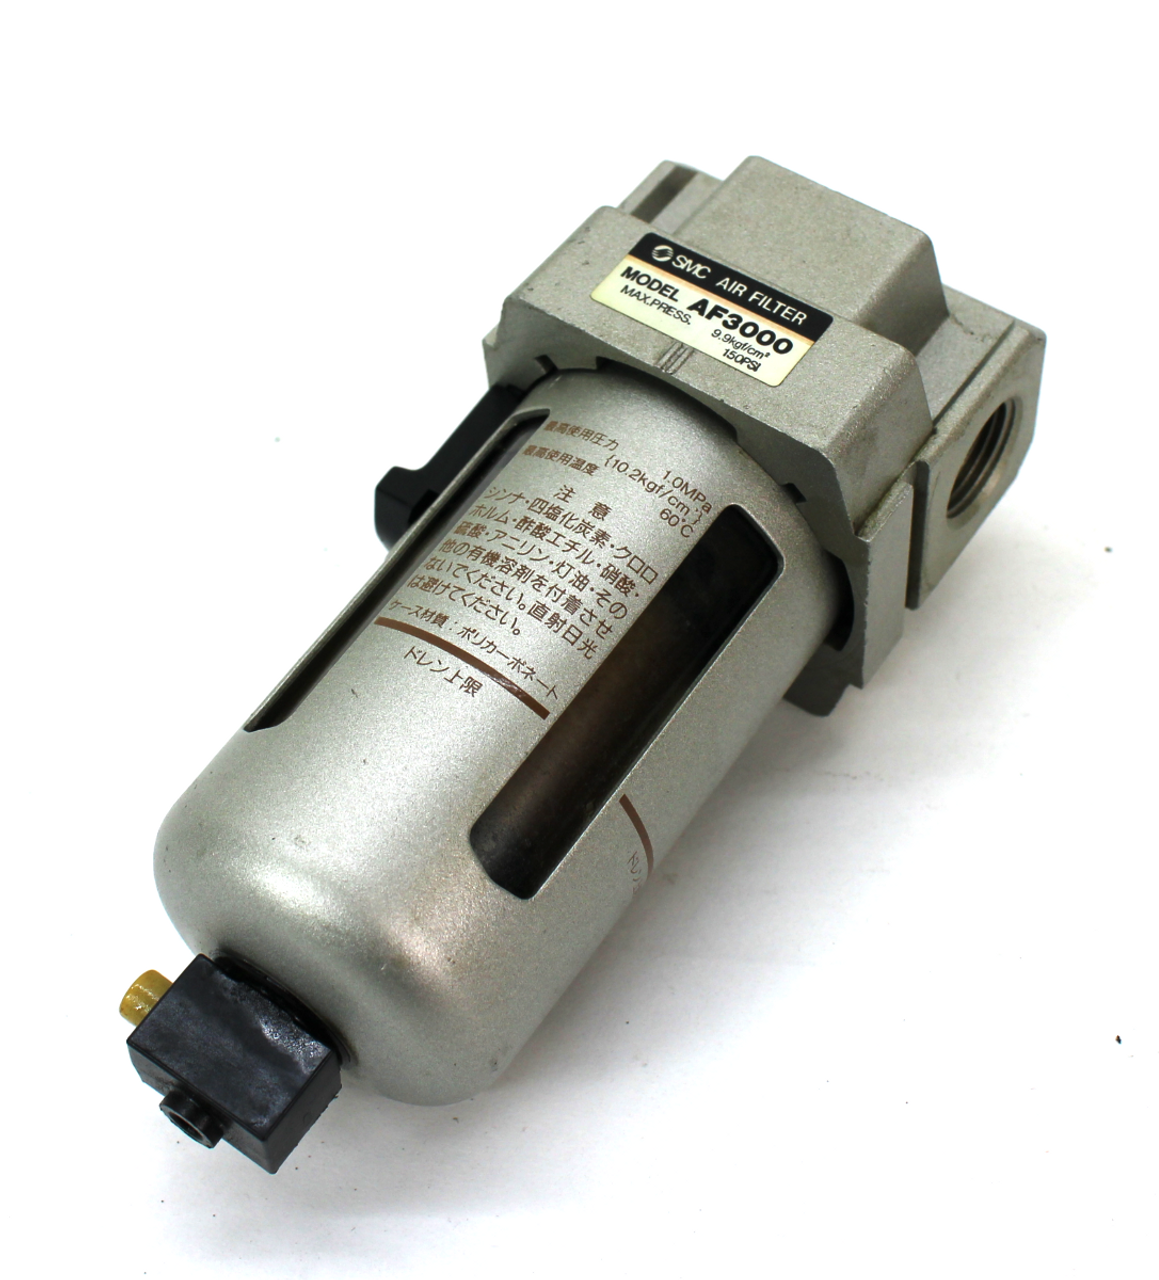 SMC AF3000 Air Filter, 150PSI